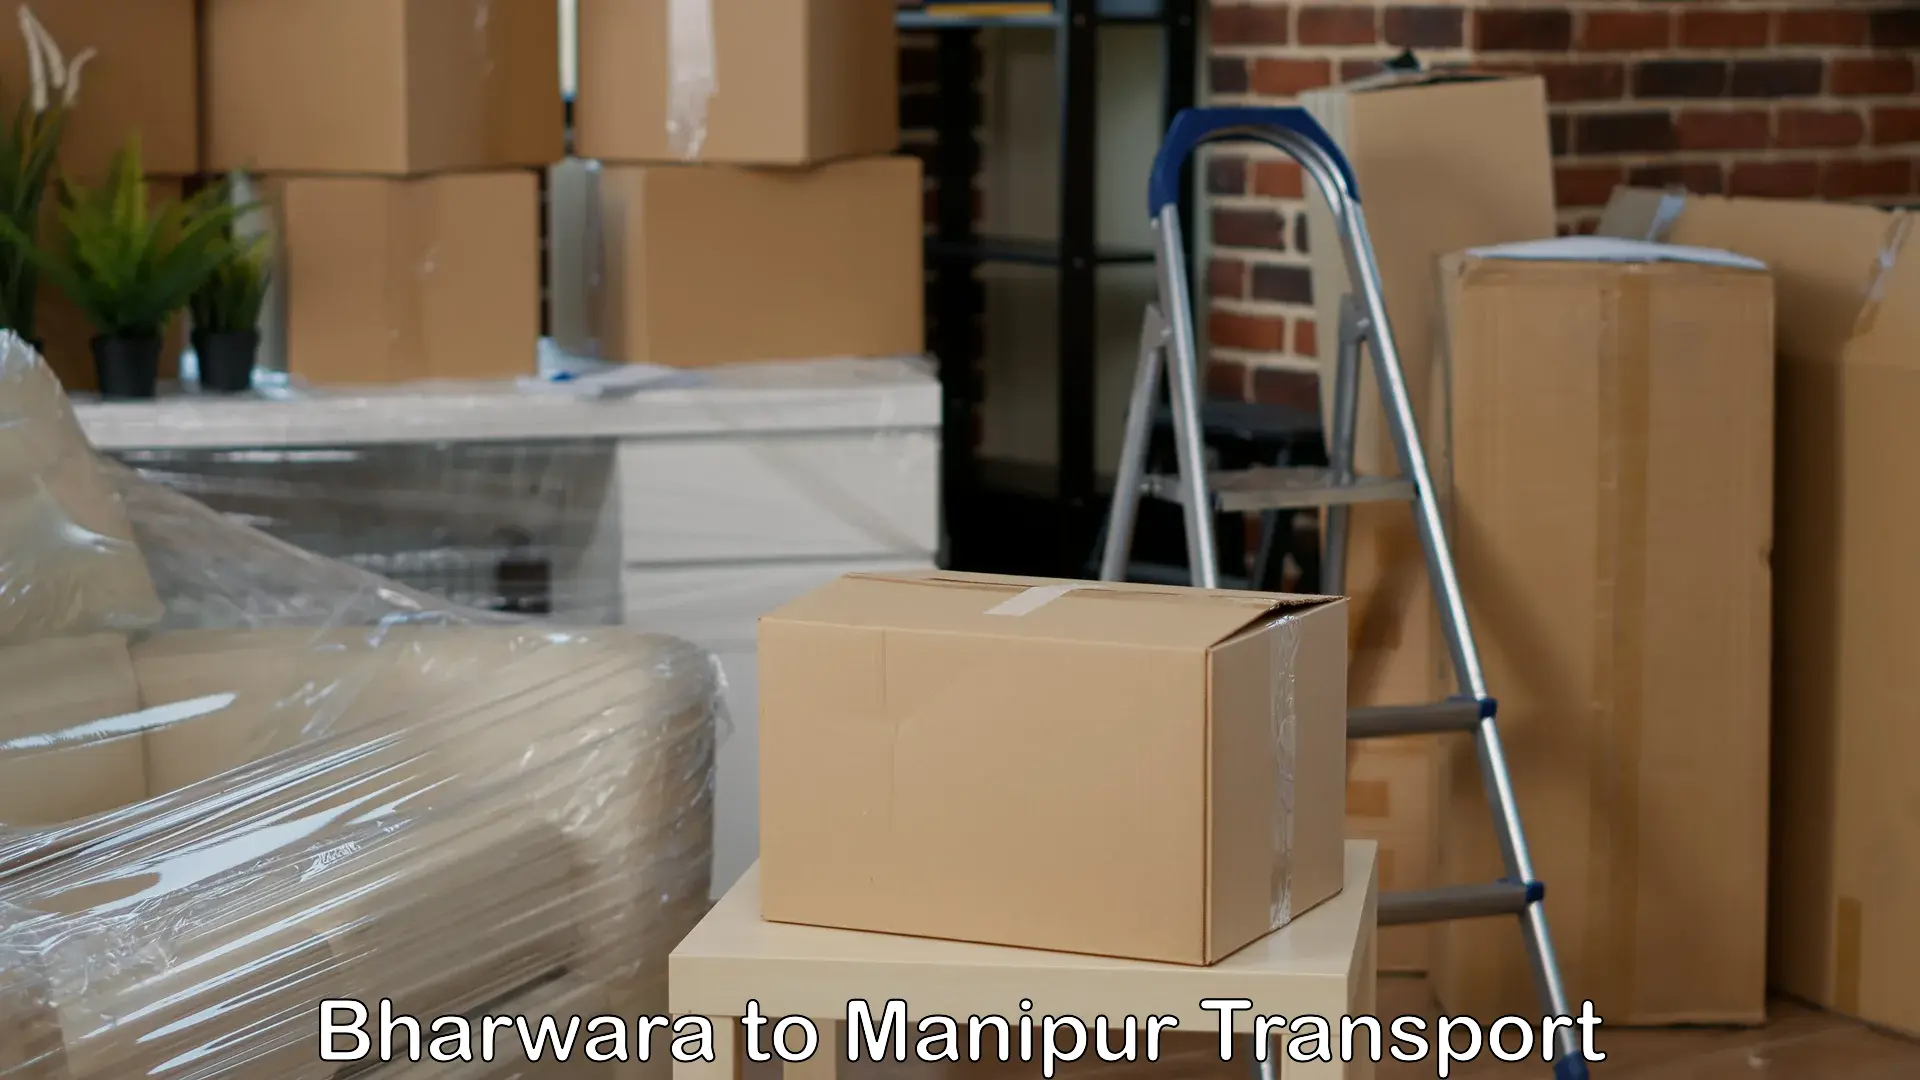 Online transport service Bharwara to Manipur